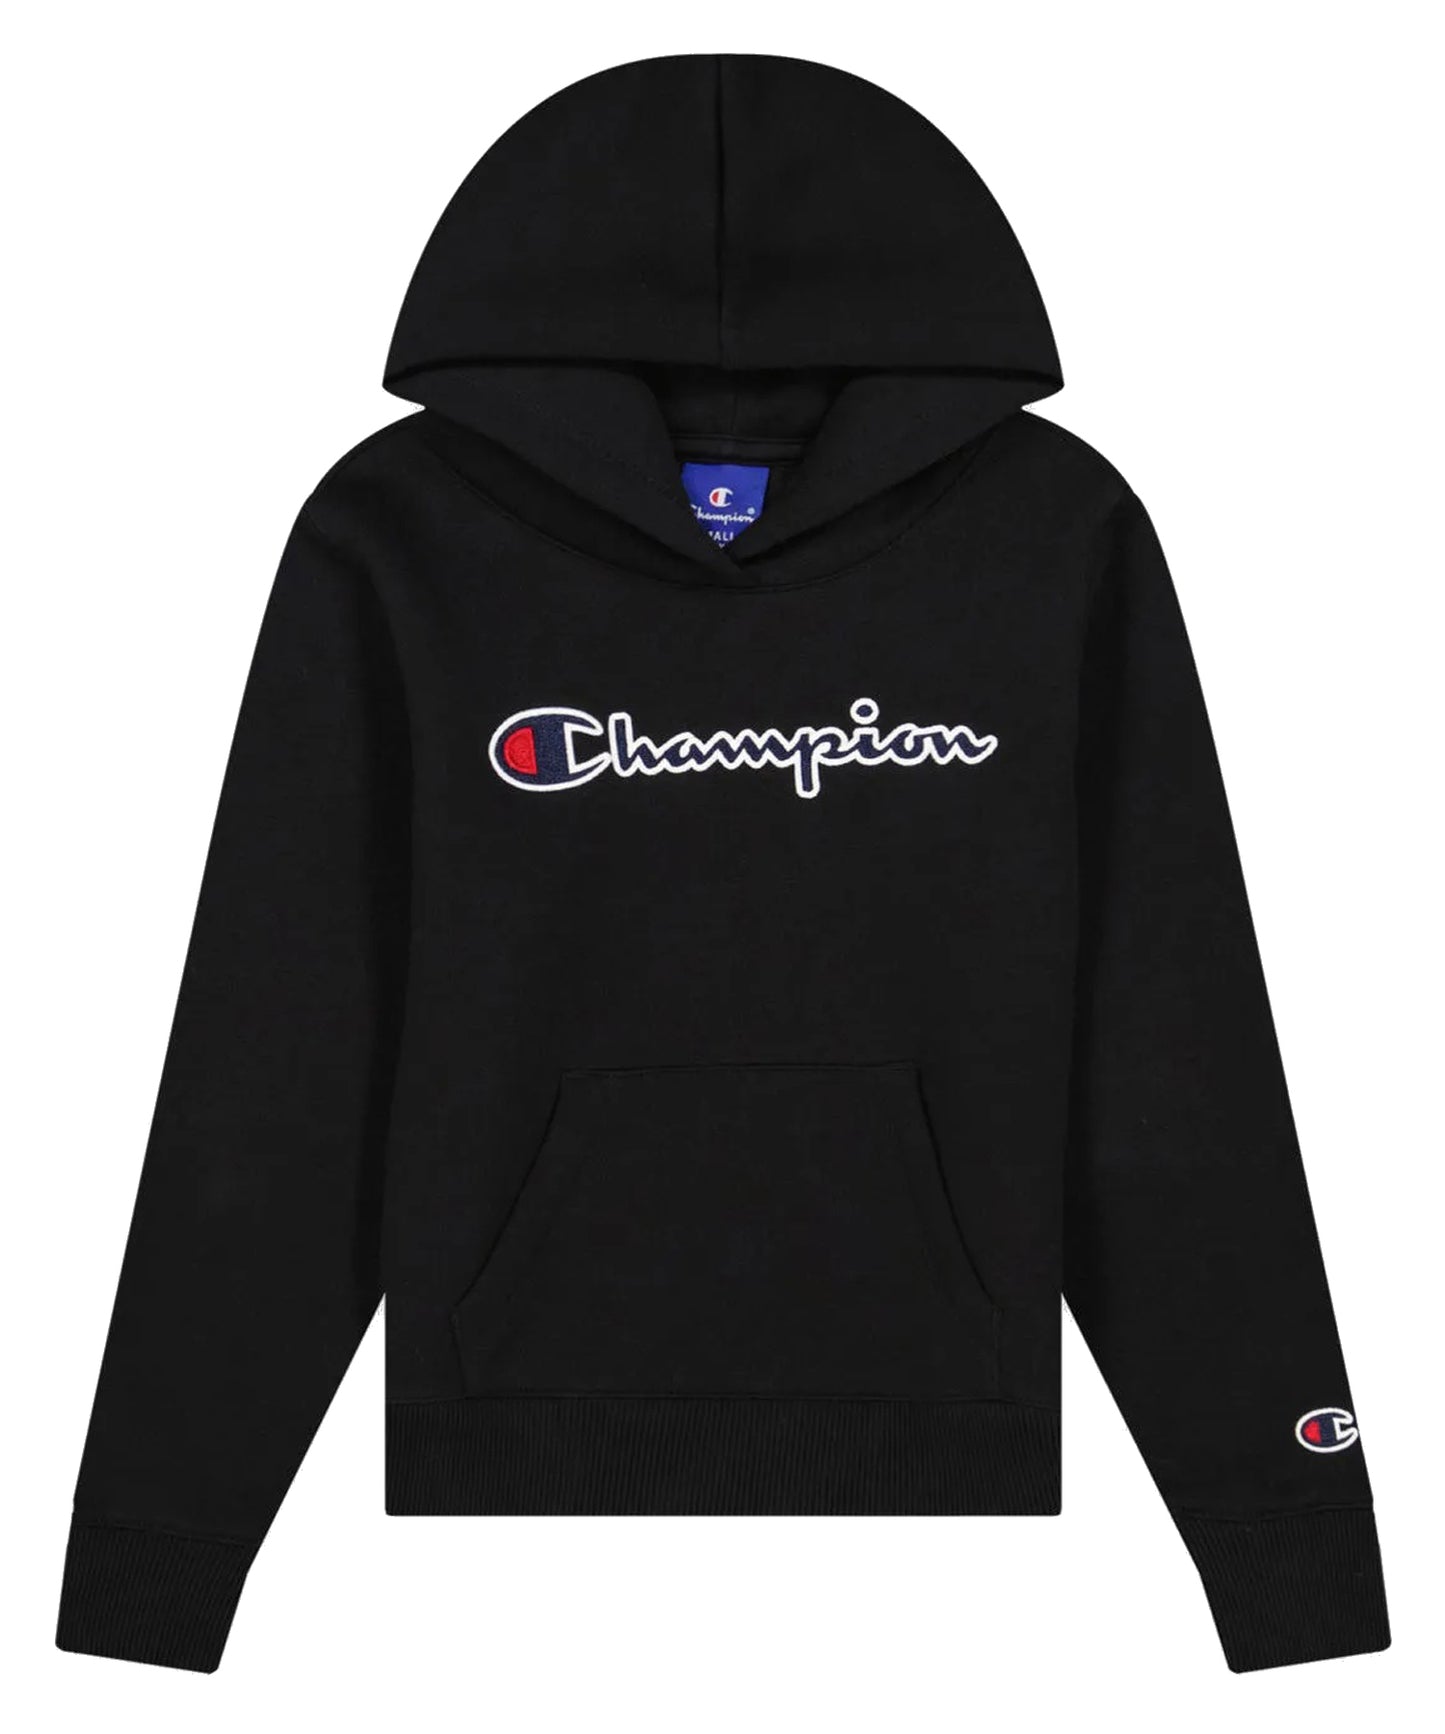 Champion sudadera con capucha de color negro y logo horizontal en el pecho.